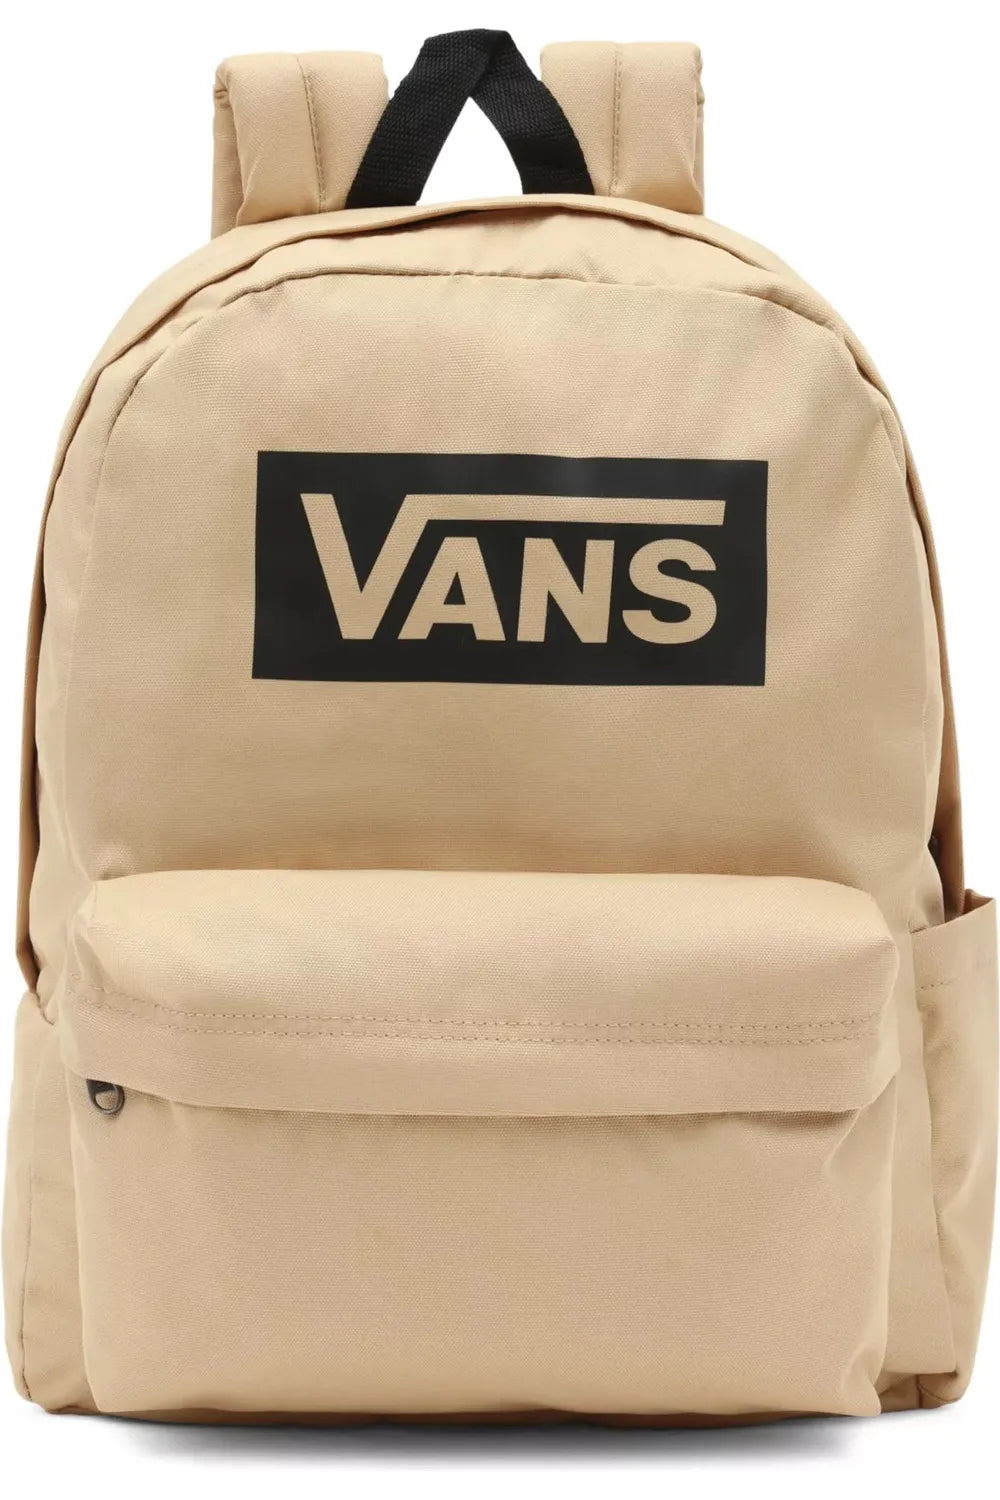 Vans Old Skool Boxed Backpack